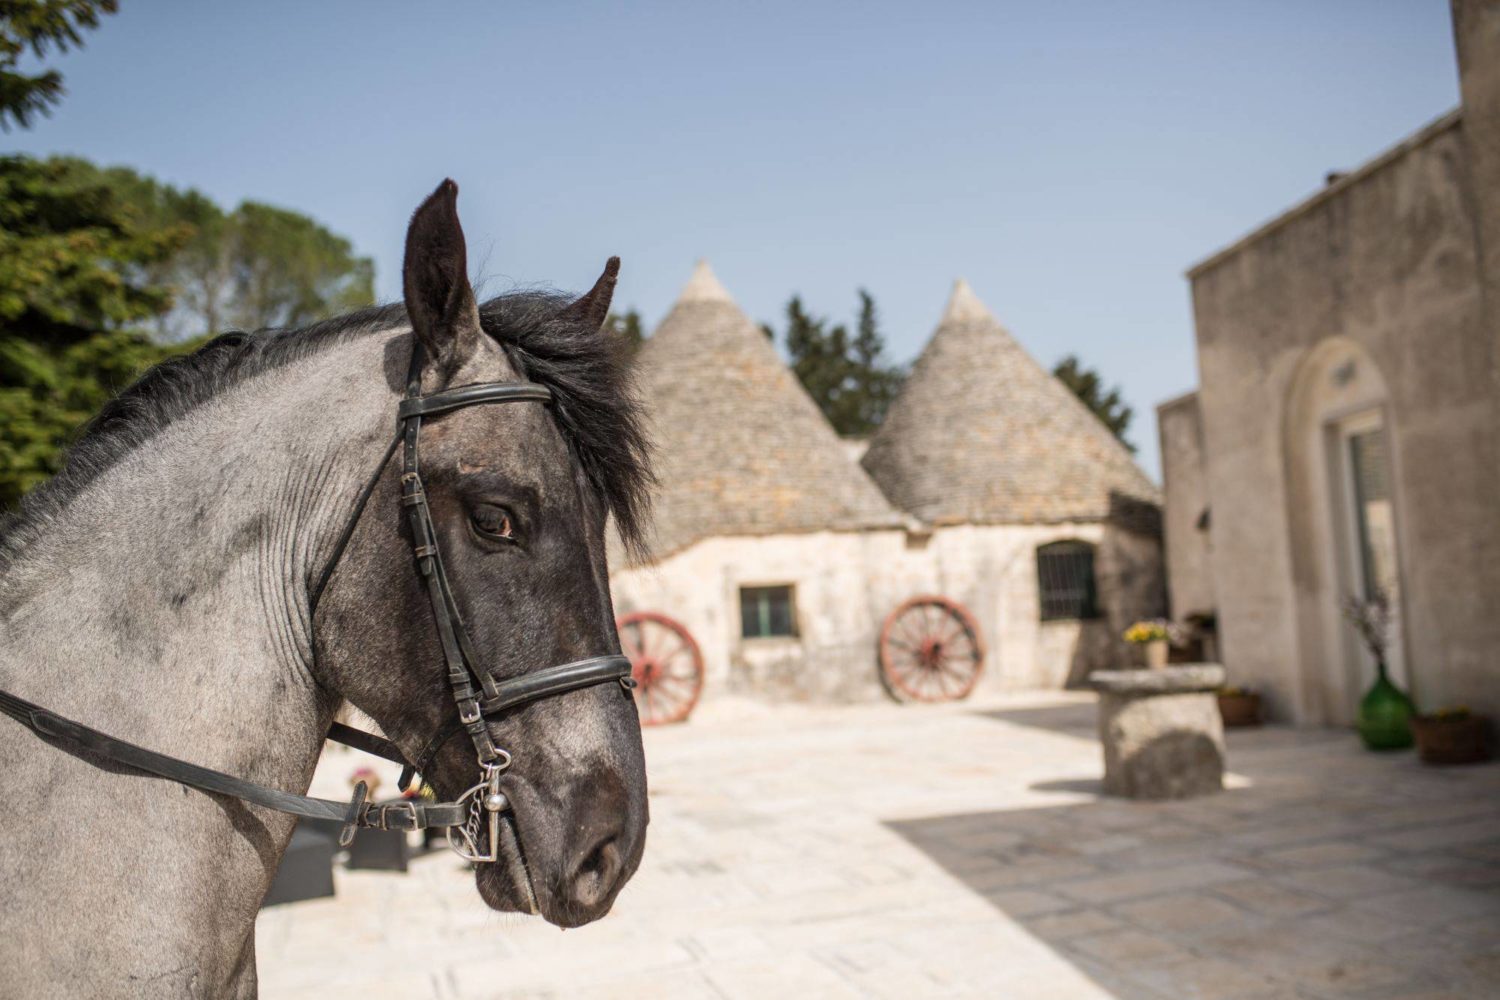 Attività a cavallo in Puglia